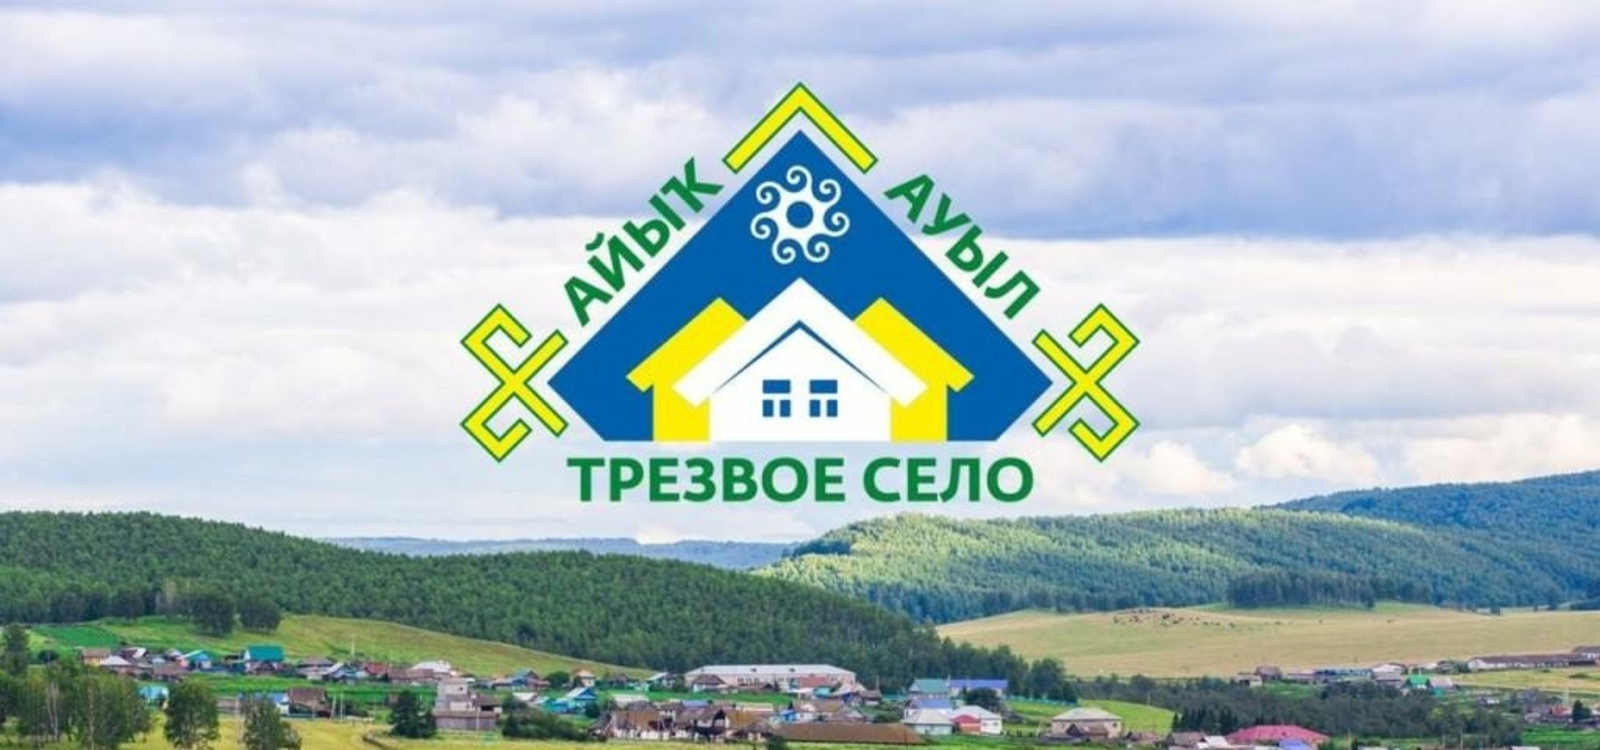 Башкортостан возглавил рейтинг трезвости среди регионов Приволжского федерального округа